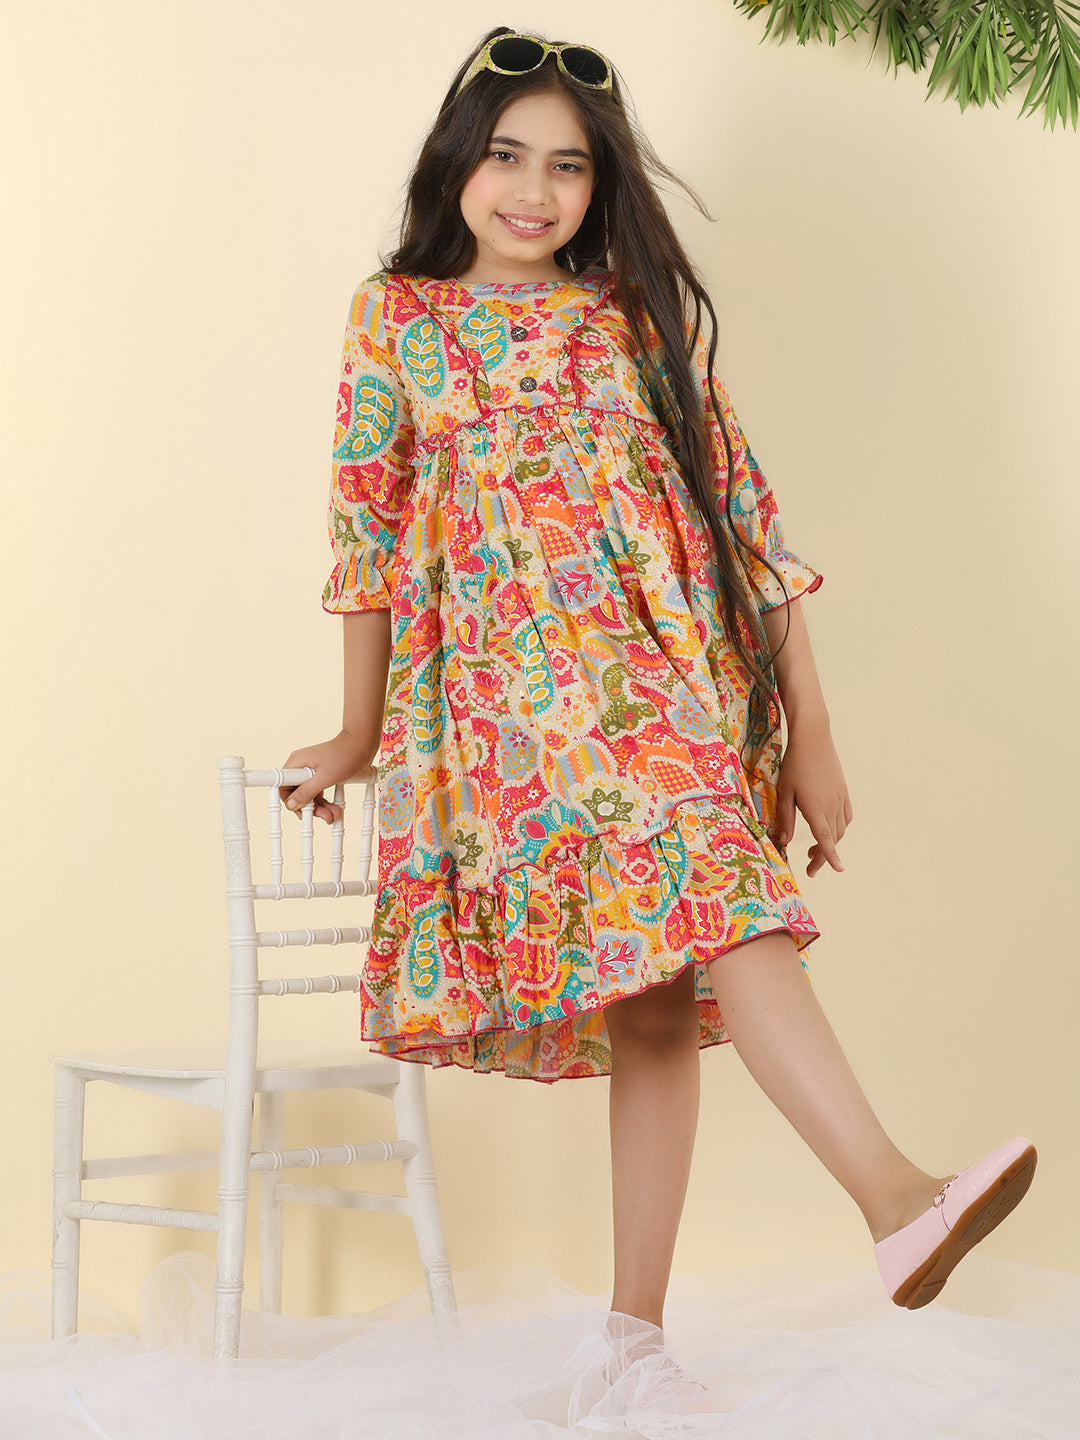 Cutiekins Girls V-Neck Printed Dress -Multicolor